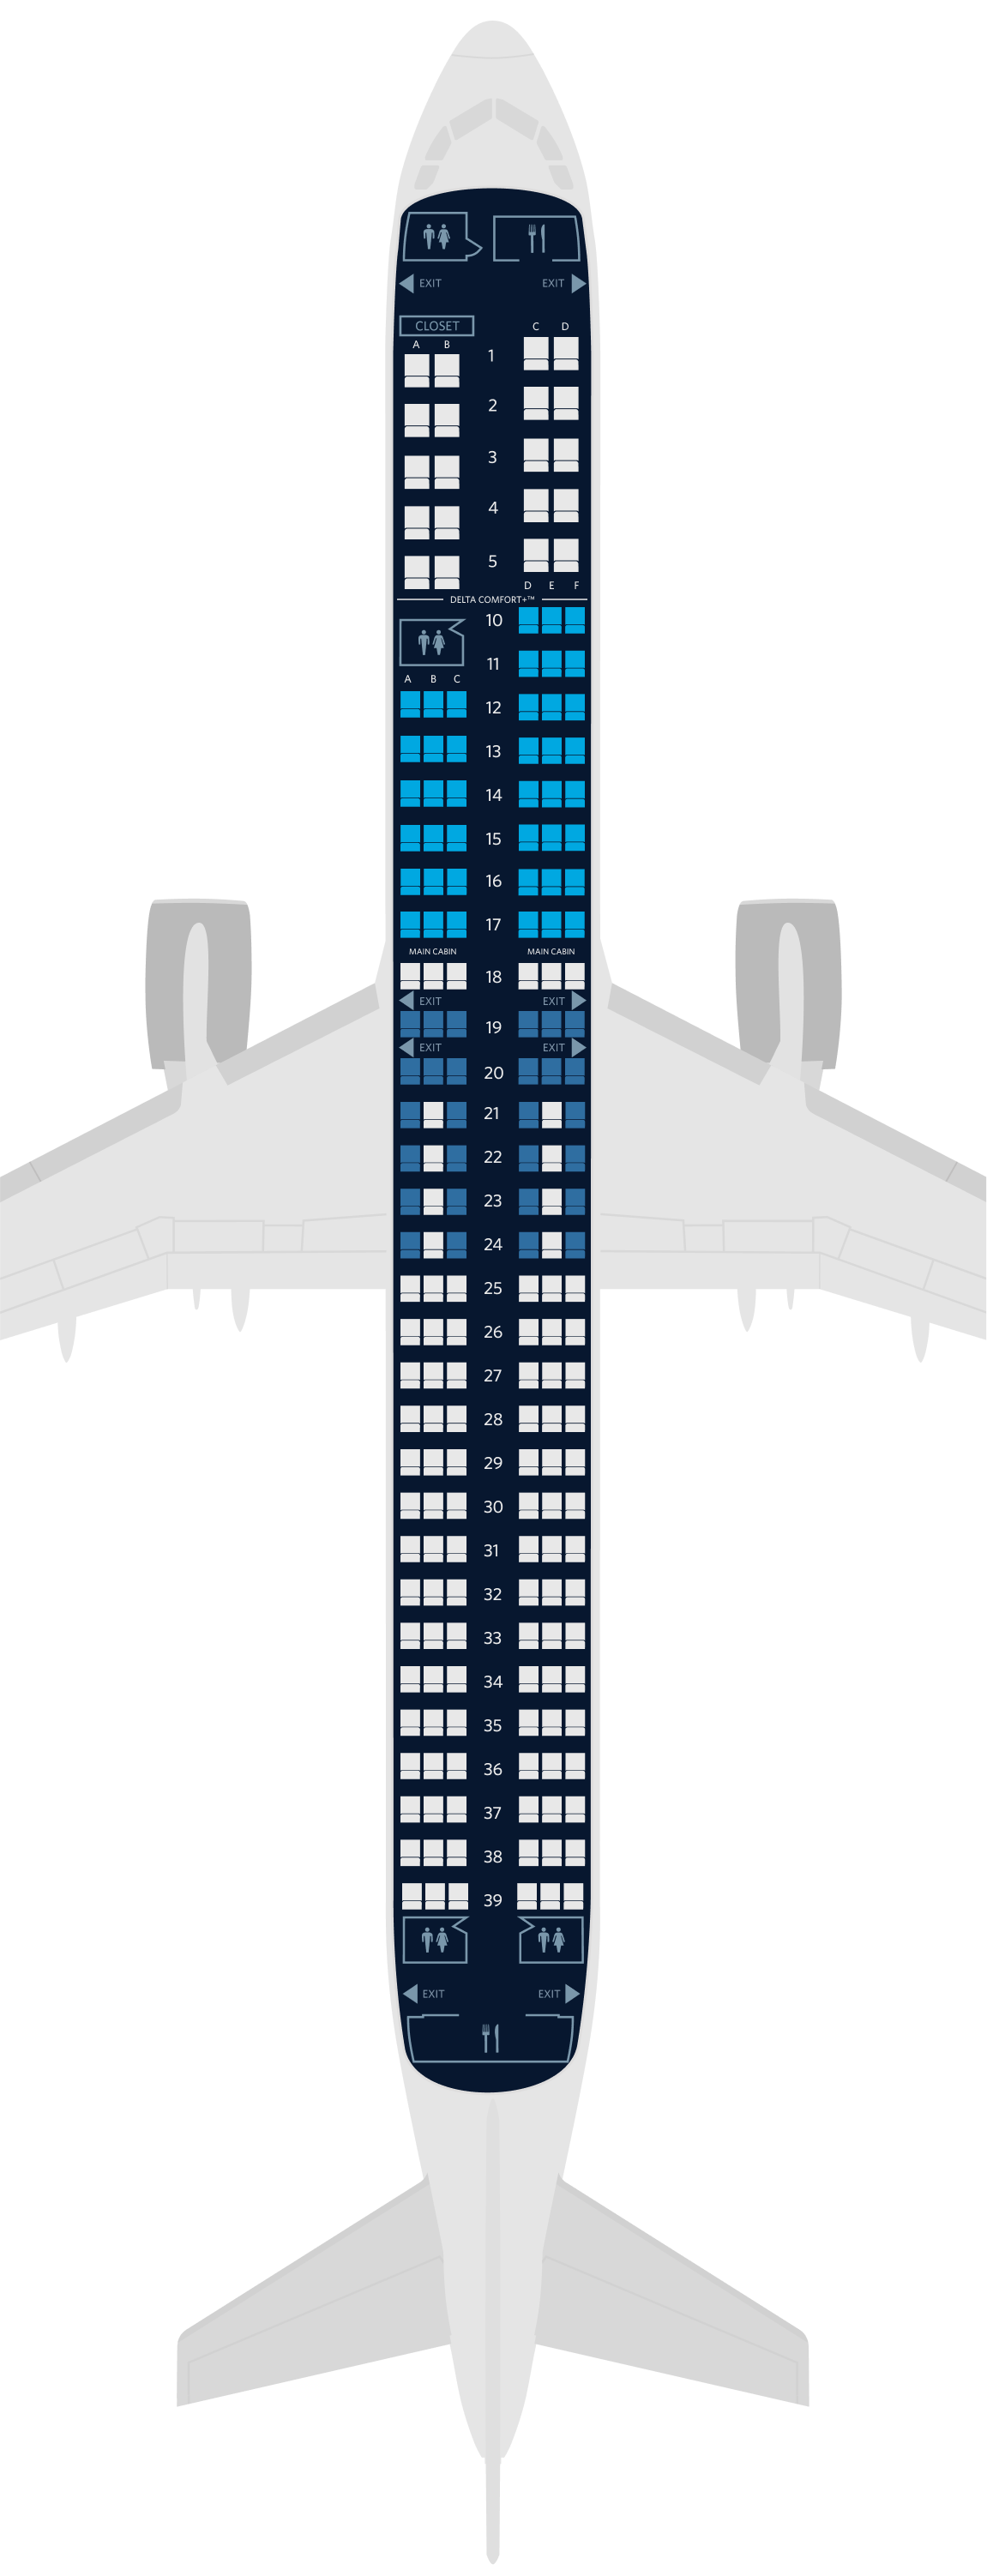 Mapa de asientos del Airbus A321neo